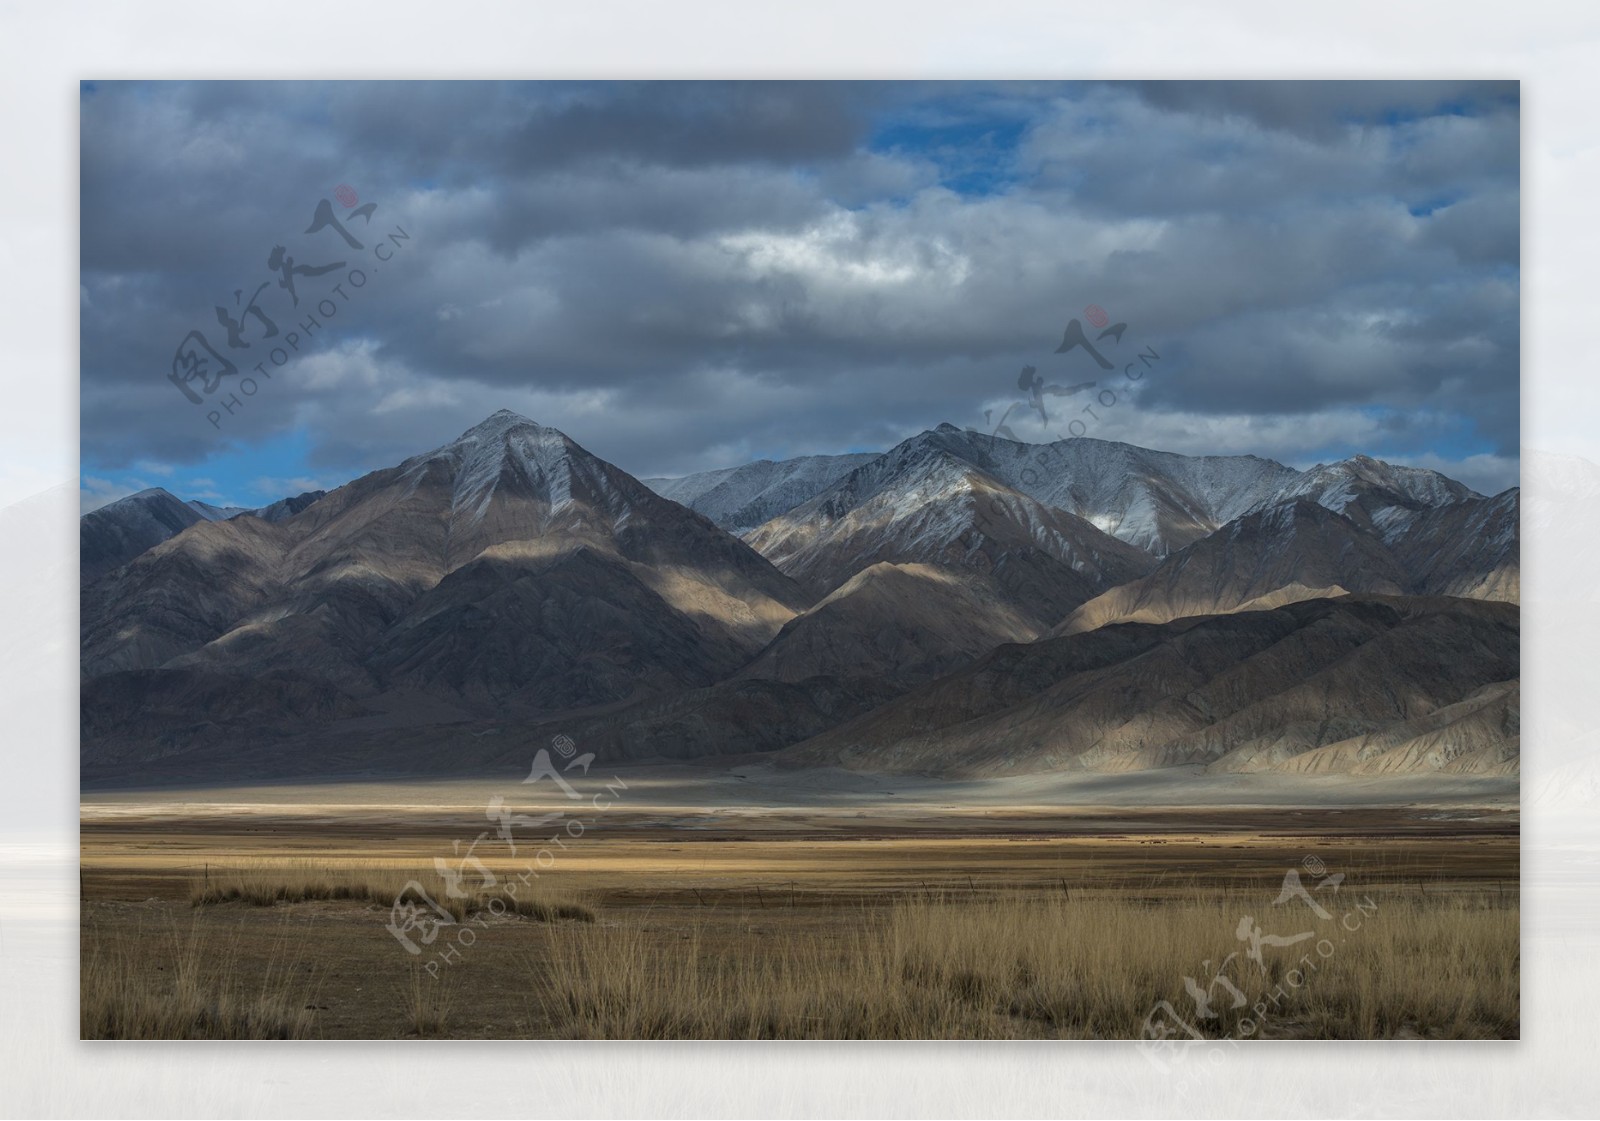 新疆帕米尔高原风景